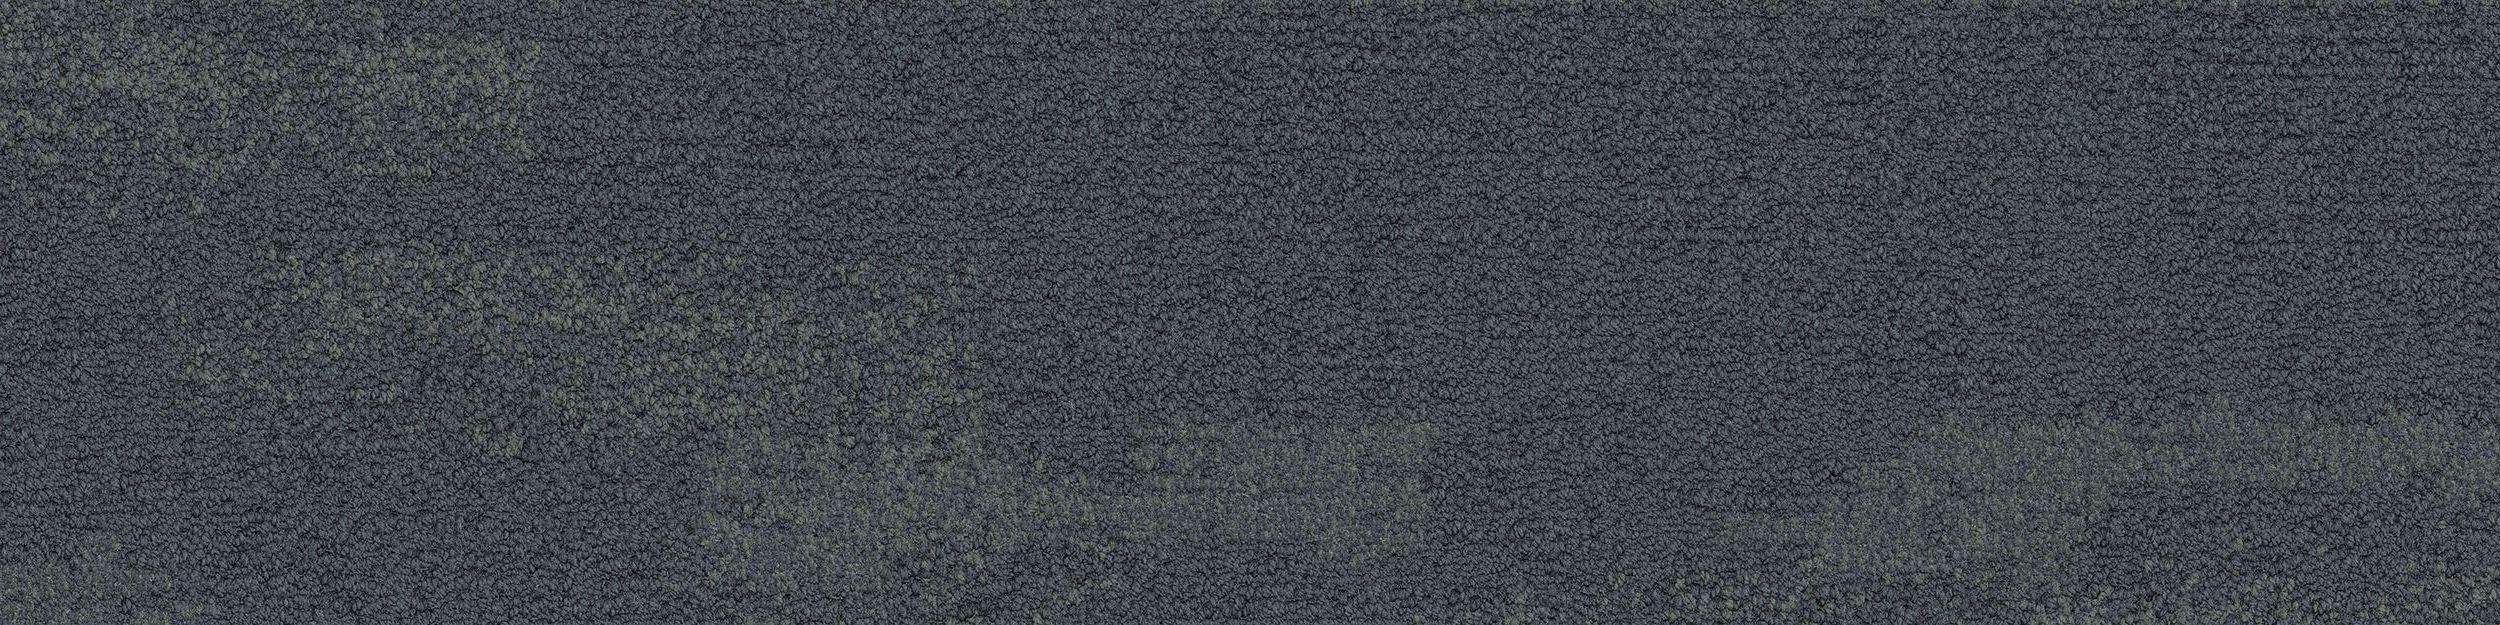 NF401 Carpet Tile In Shale Bildnummer 2